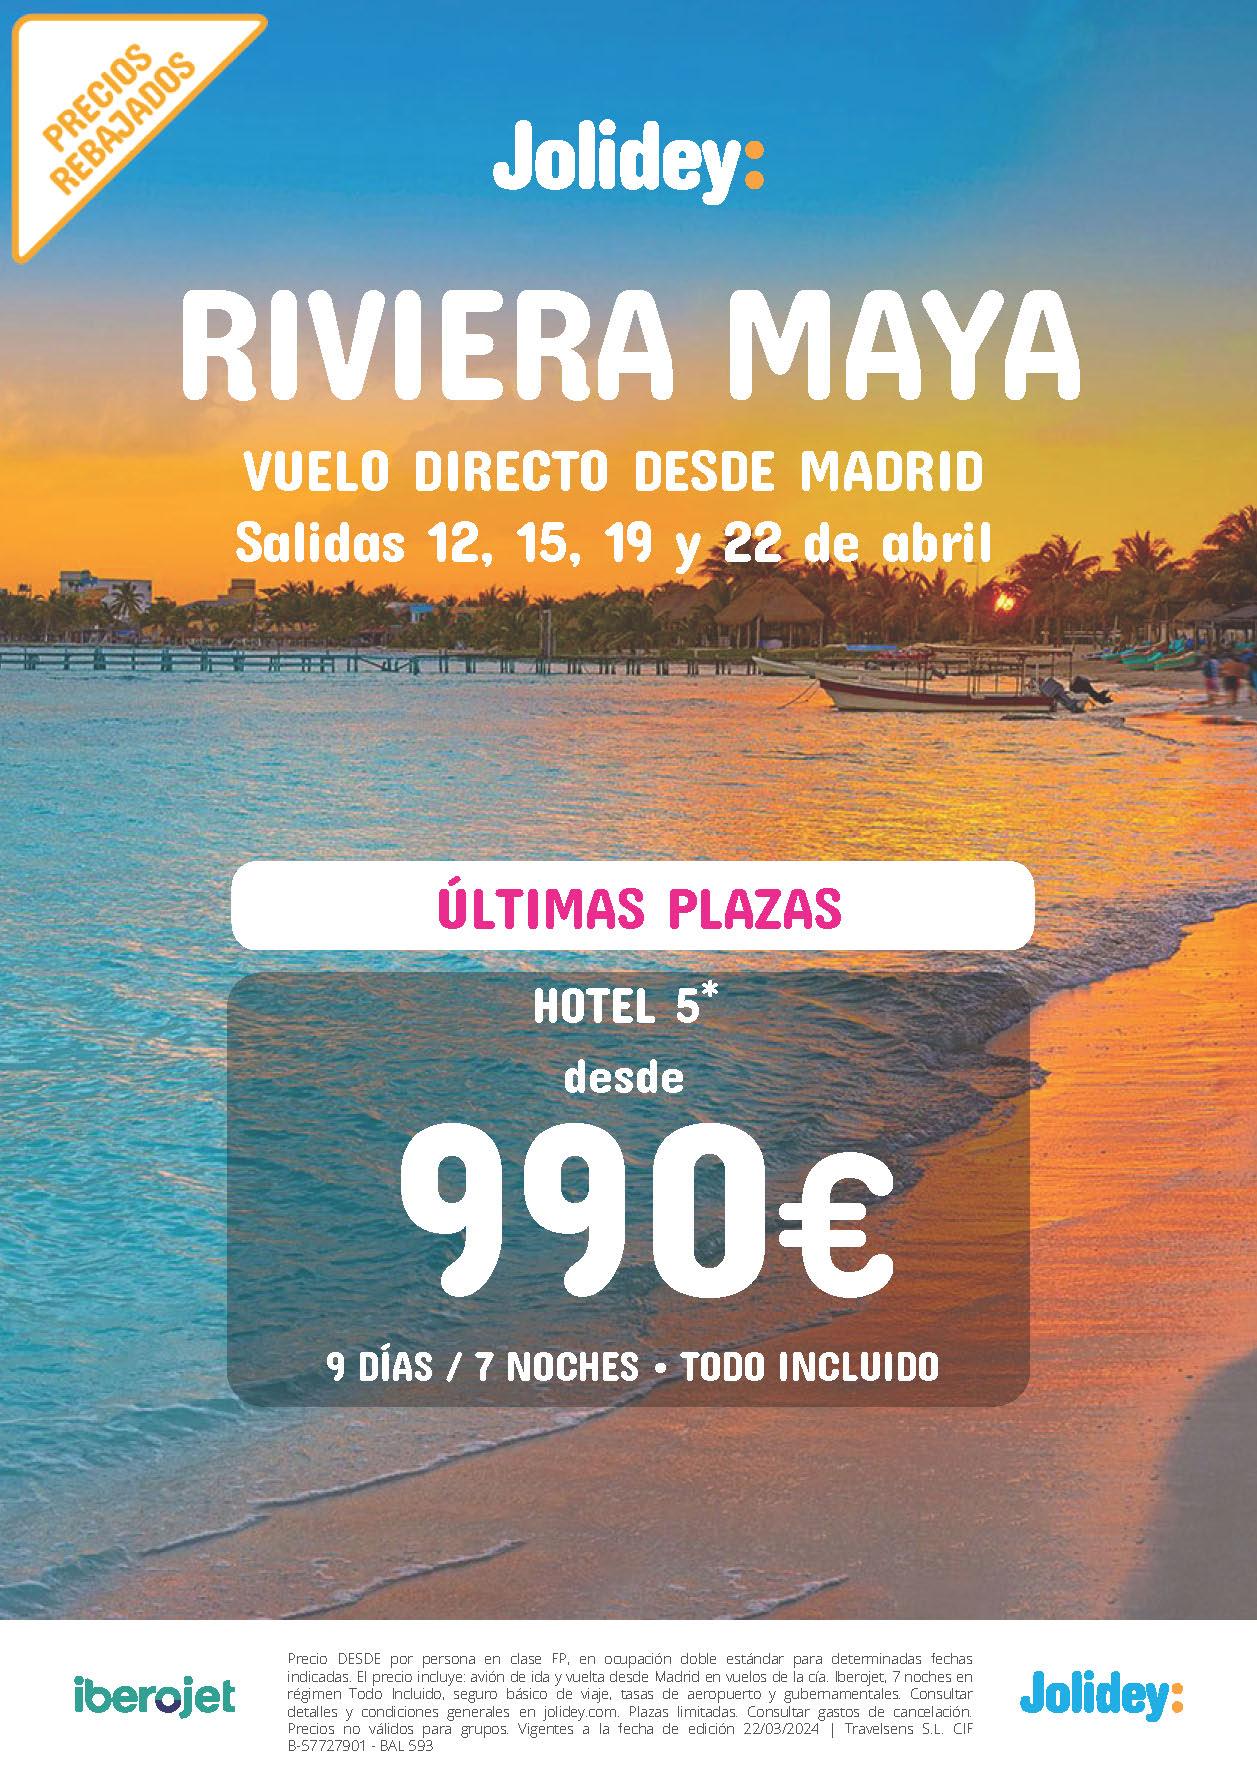 Oferta Jolidey Ultima Hora Estancia en Riviera Maya 9 dias Hotel 5 estrellas Todo Incluido salidas Abril 2024 en vuelo directo desde Madrid